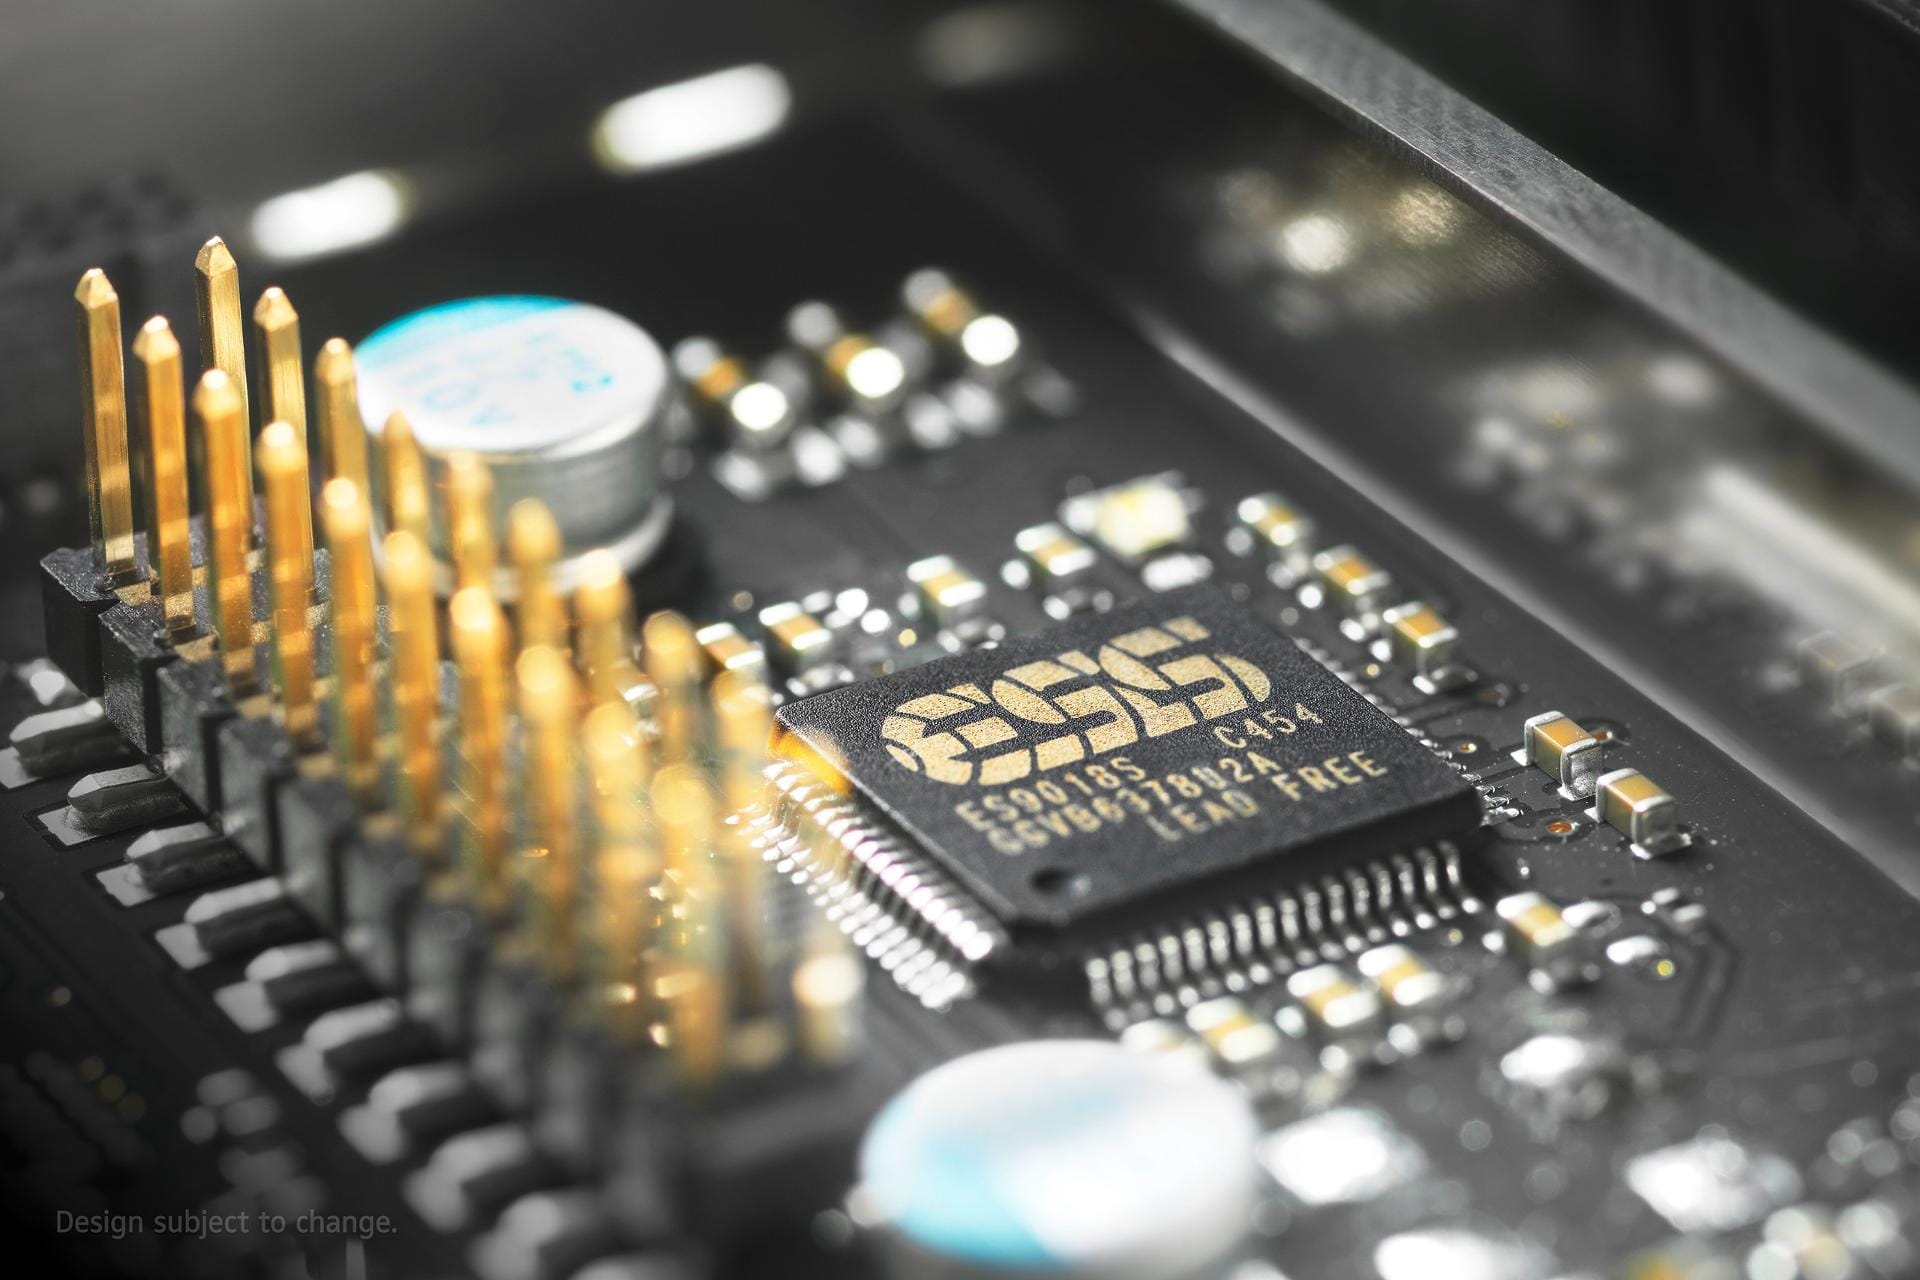 Zur Konvertierung der digitalen Musikdaten in analoge Signale nutzt der Orpheus den ESS SABRE ES9018 Chip – eine Referenz im Bereich der Digital-Analog-Wandler.